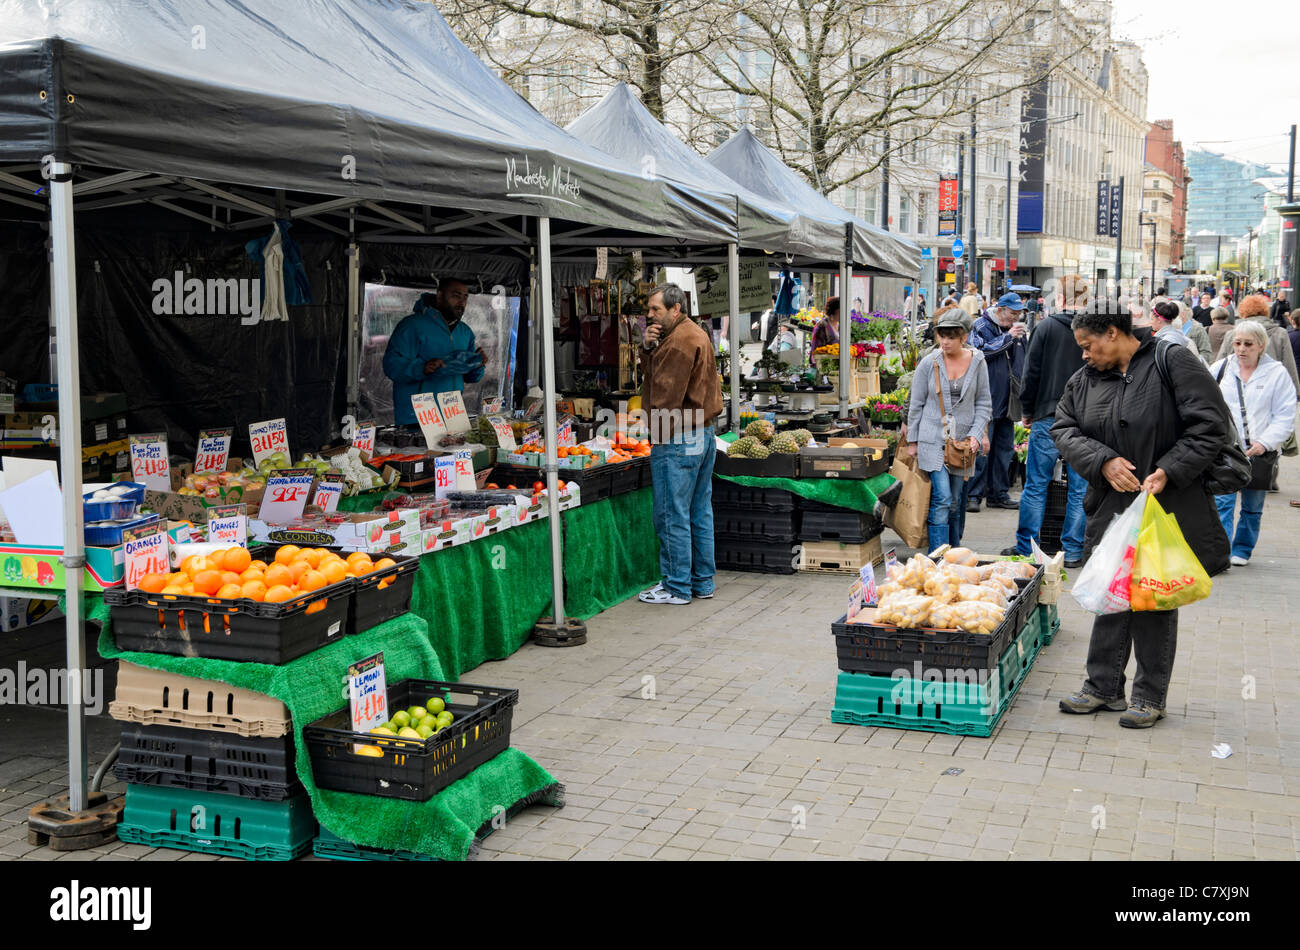 Outdoor-Markt Ständen in Piccadilly Gardens, Manchester, England. Kunden sind die breiten ethnische Vielfalt der Stadt. Stockfoto